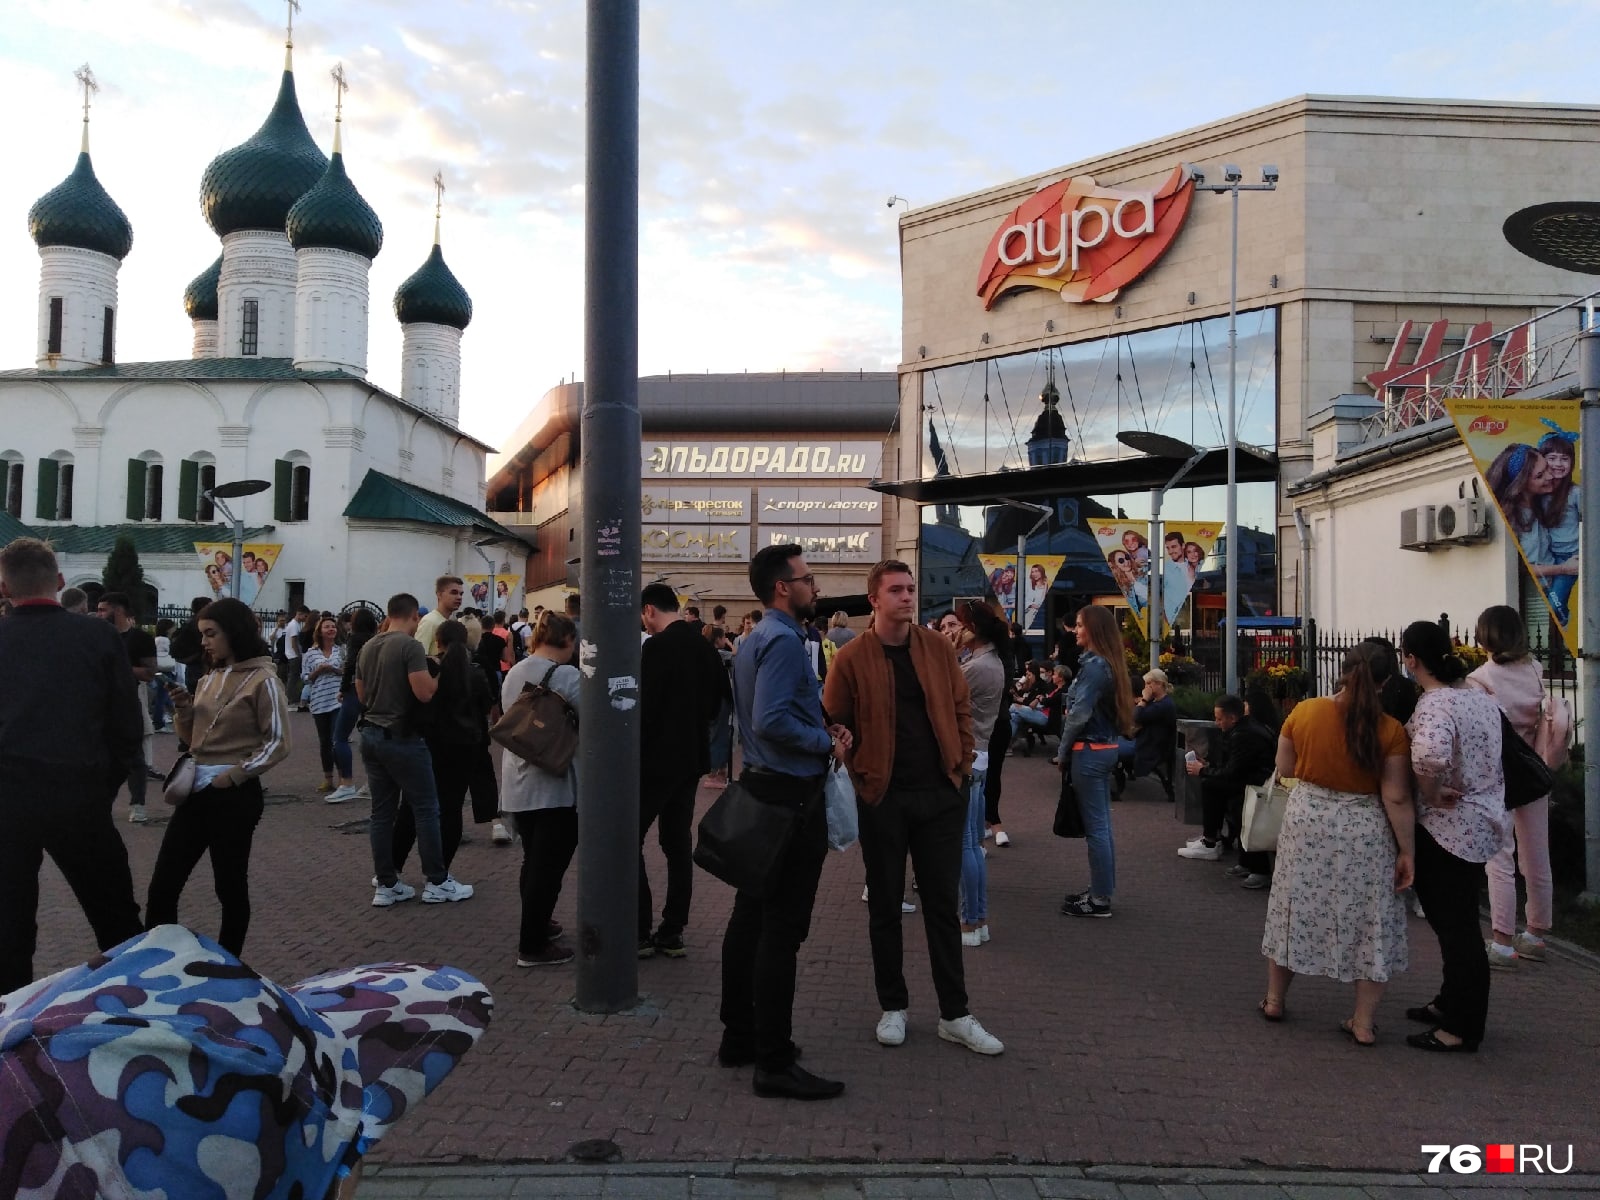 В Ярославле эвакуировали торговый центр «Аура». Что происходит на месте